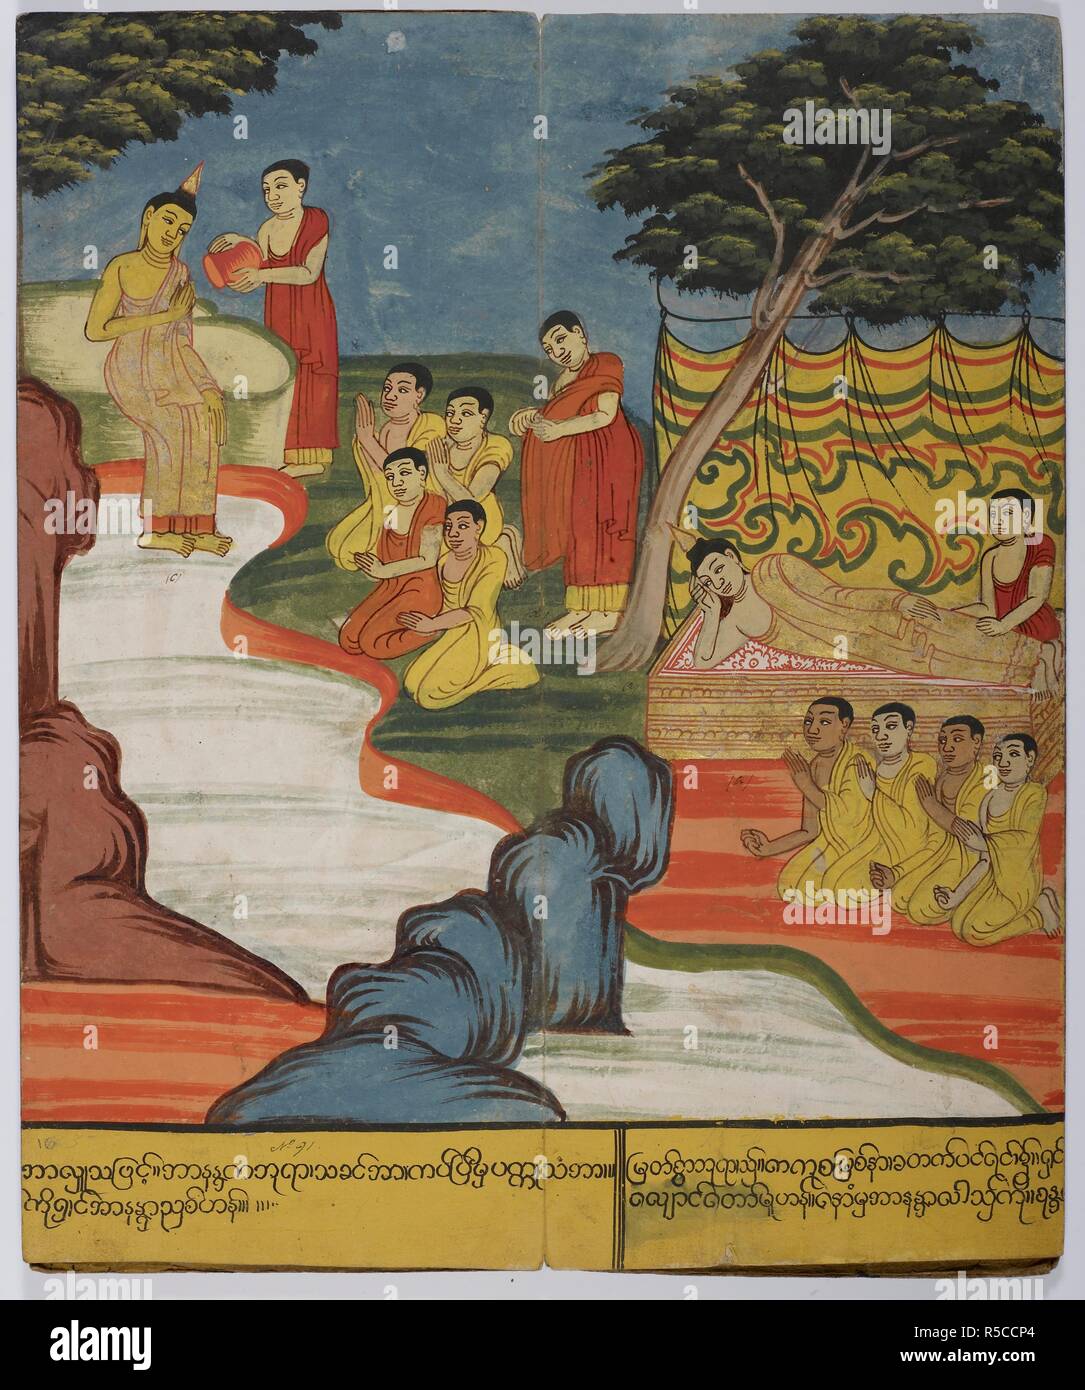 Il Buddha balneazioni in fiume Kakuttha (sulla sinistra), che si estende verso il basso (centro); e invia un messaggio a Cunda (sulla destra) mentre i musicisti si esibiscono. La vita del Buddha. La Birmania, c.1800-1820. Fonte: o. 14298, f.16. Lingua: birmani. Autore: ANON. Foto Stock